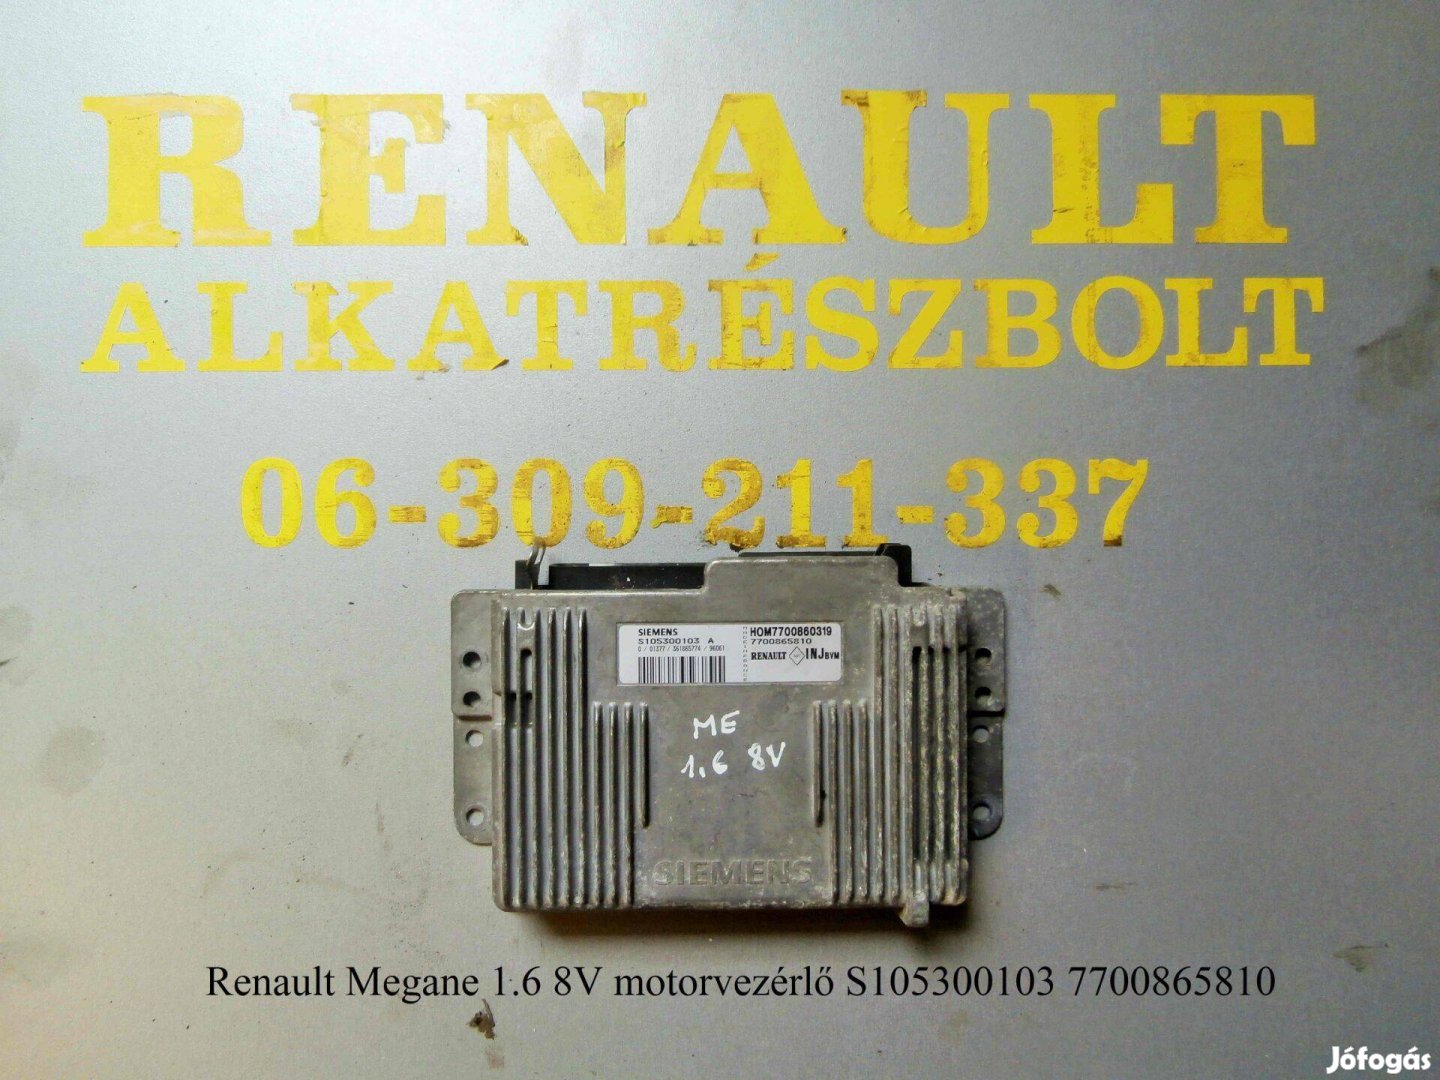 Renault Megane 1.6 8V motorvezérlő S105300103 7700865810